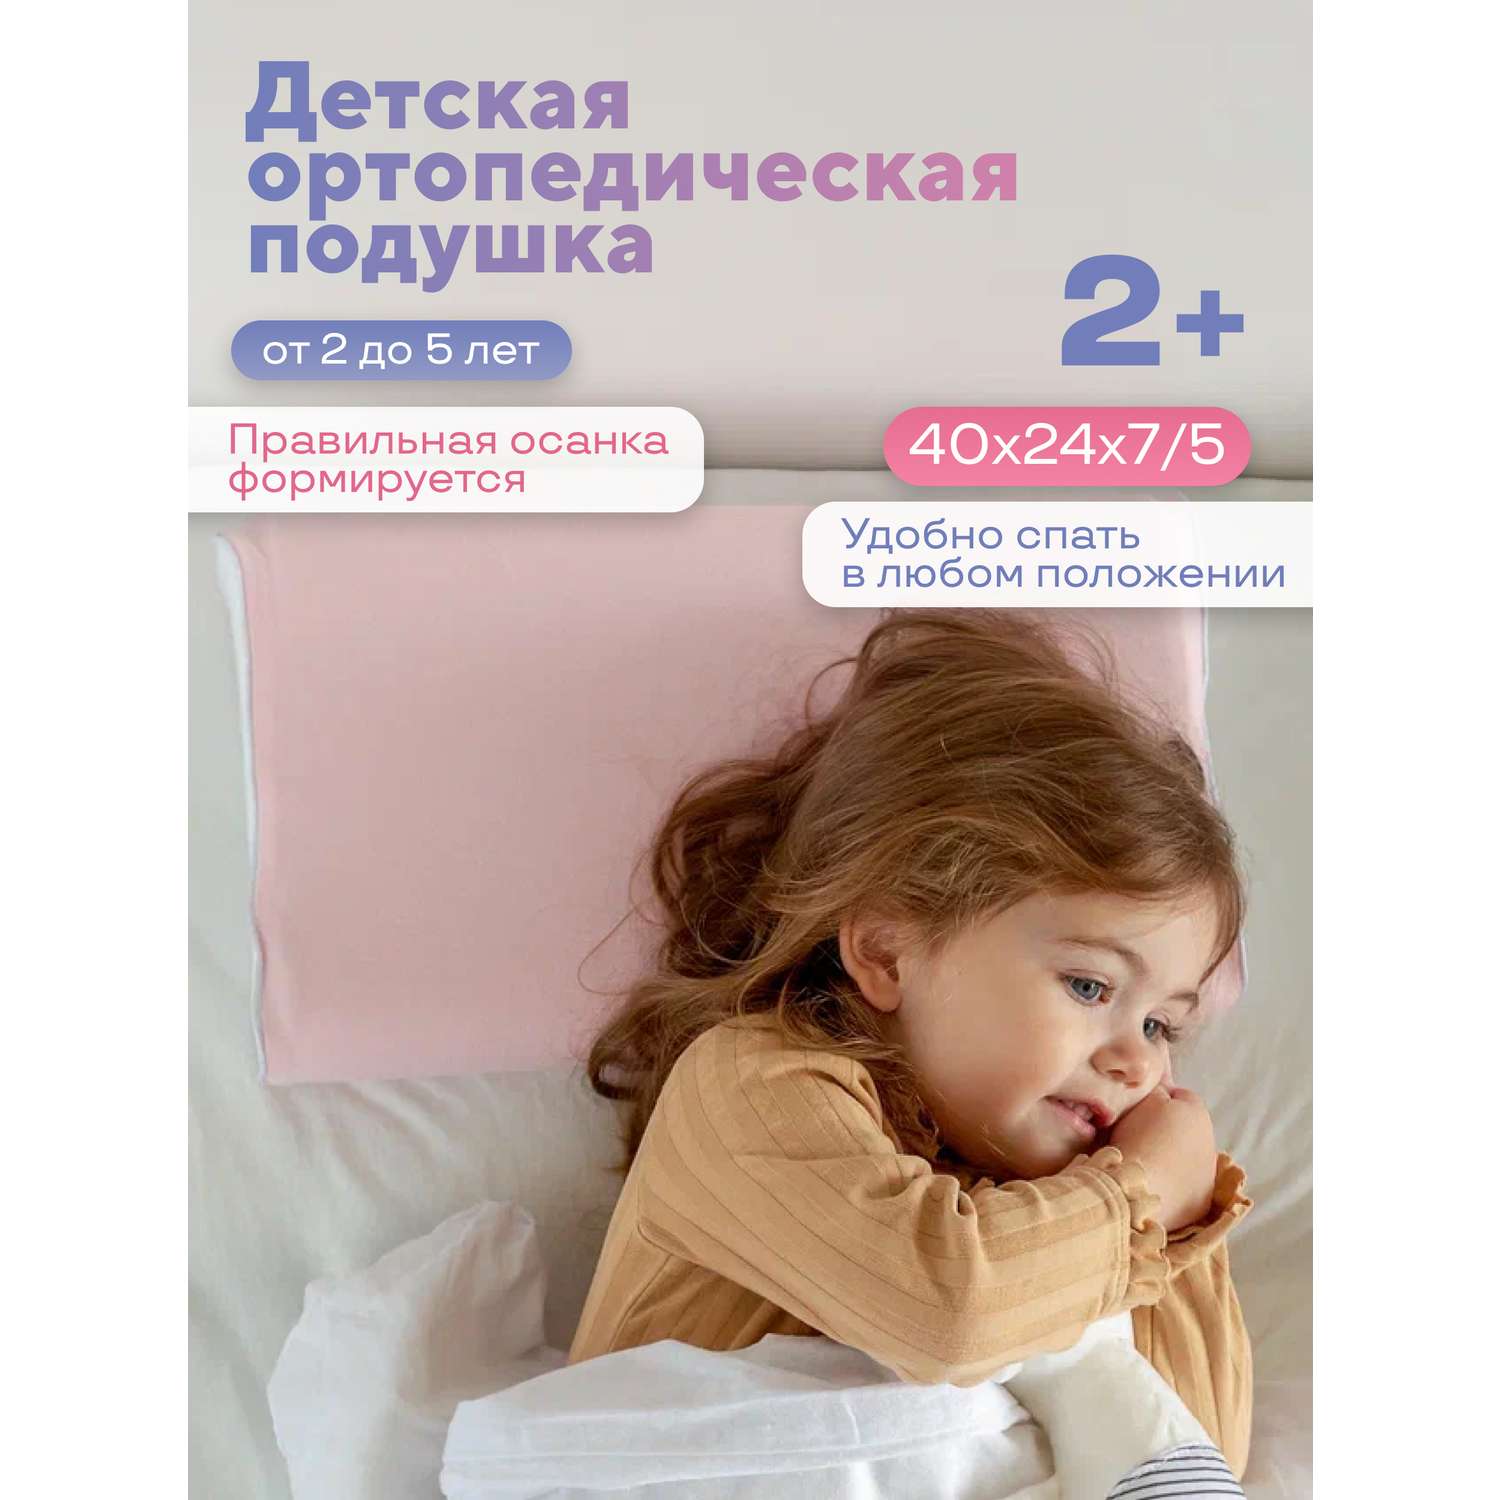 Детская подушка Dr. Dream анатомическая от 2 до 5 лет - фото 1